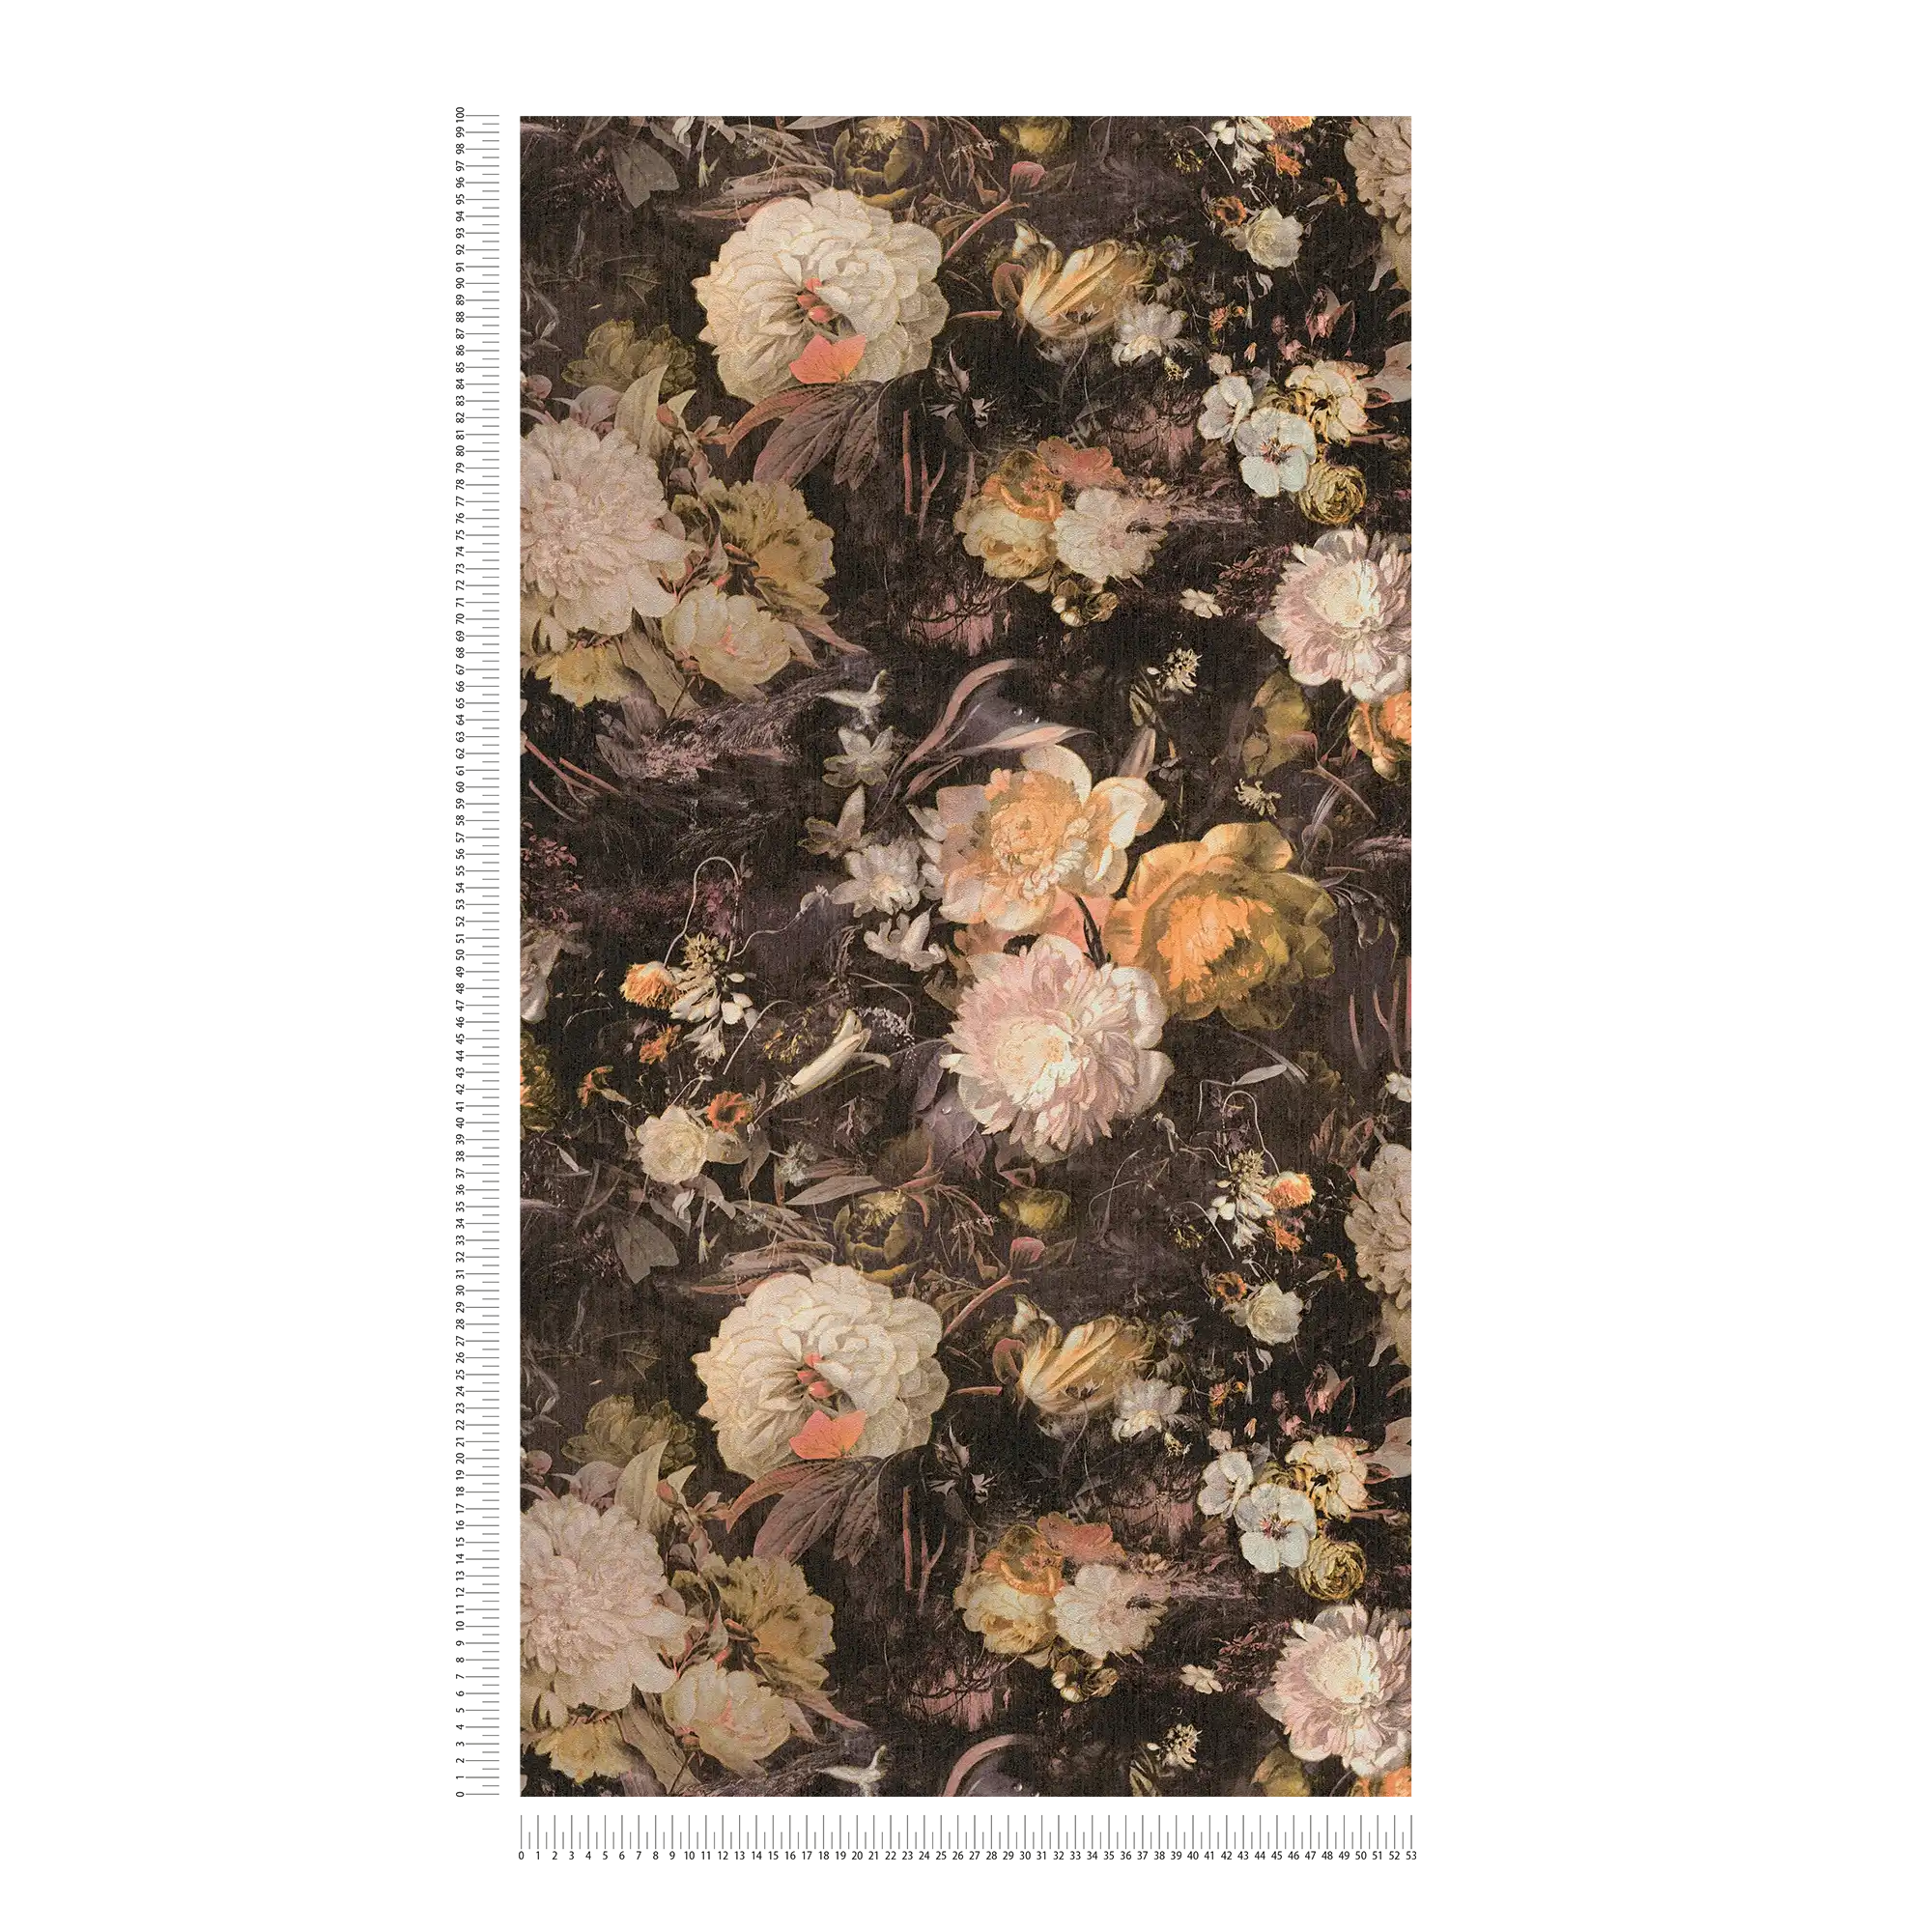             Bloemenbehang in kunststijl met rozen - Geel, Bruin
        